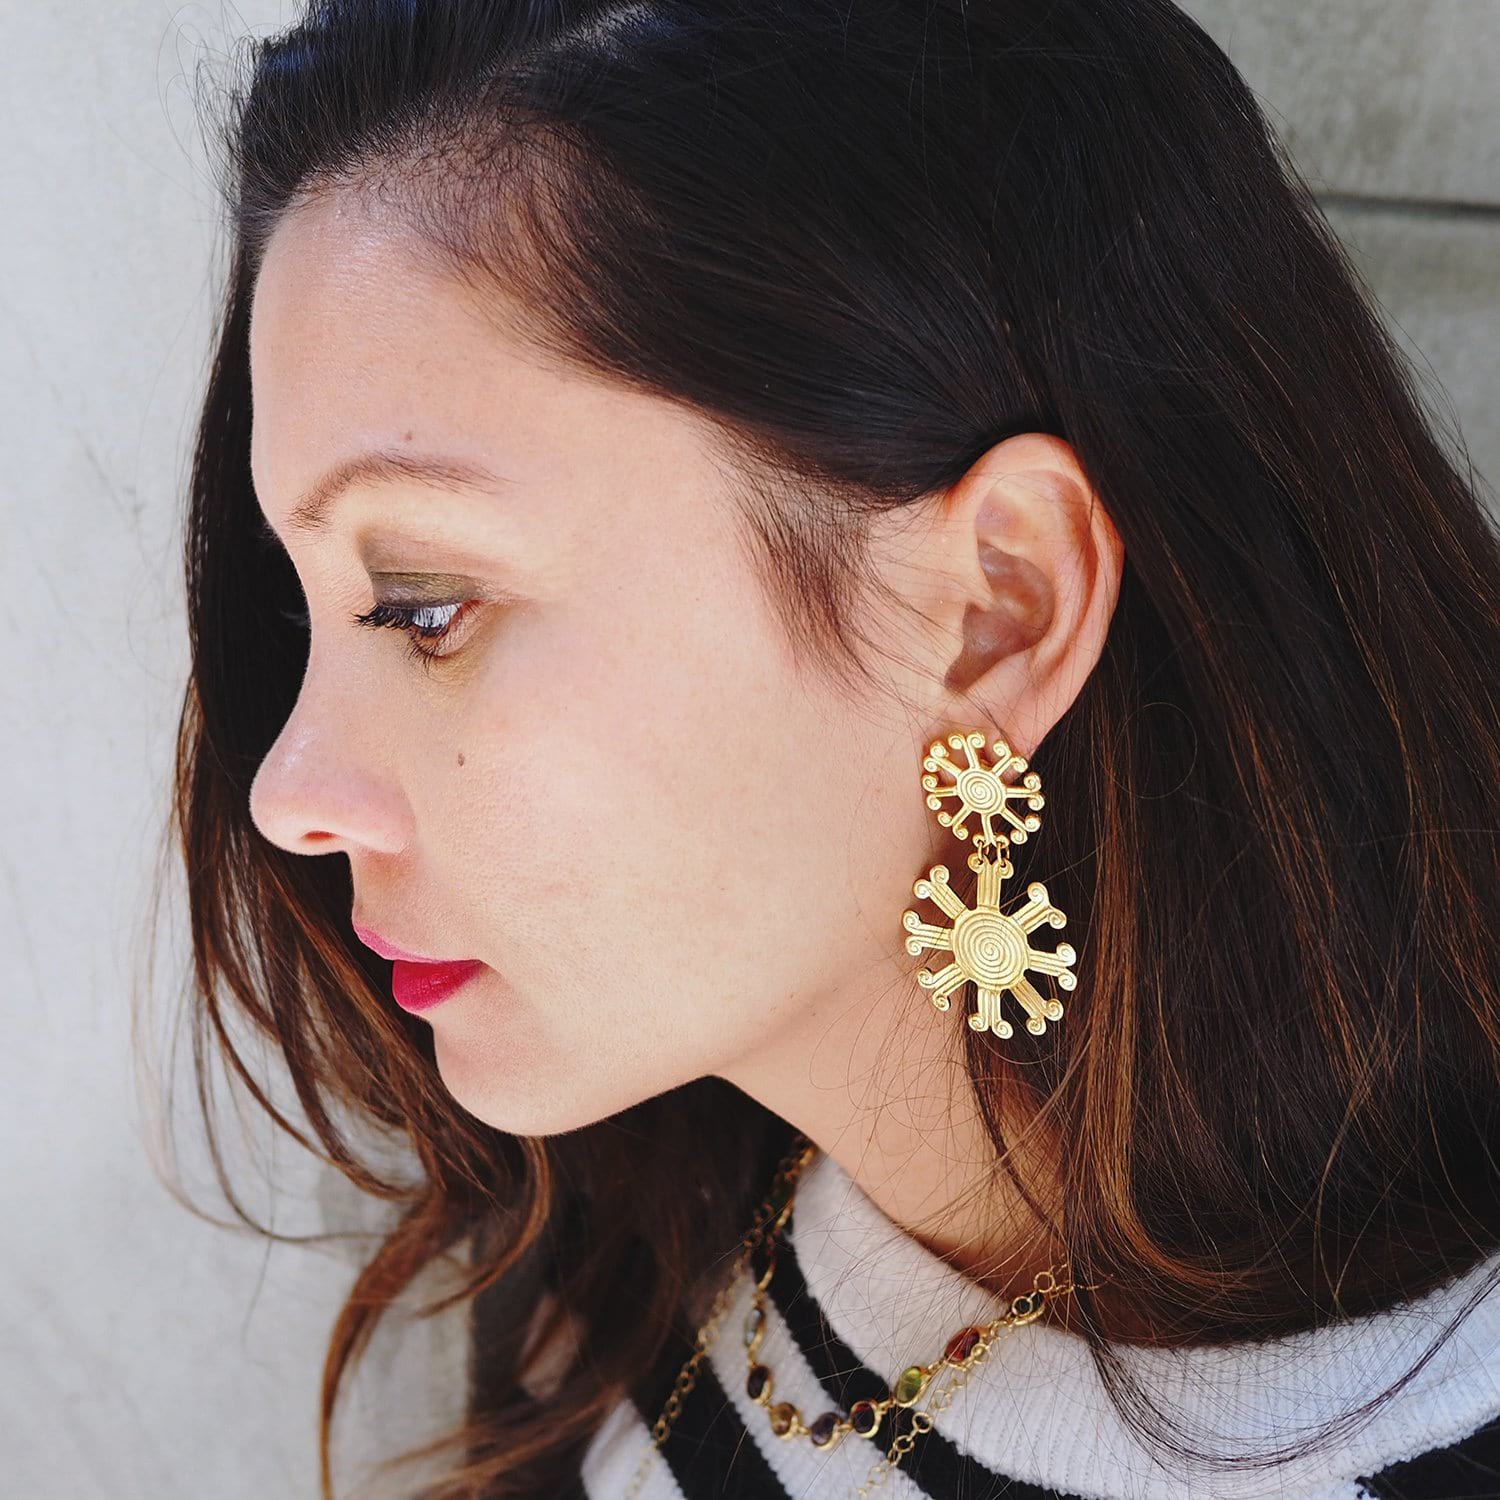 Mayan Stars Earrings | EARRINGS | Shop Women's Accessories Online ...